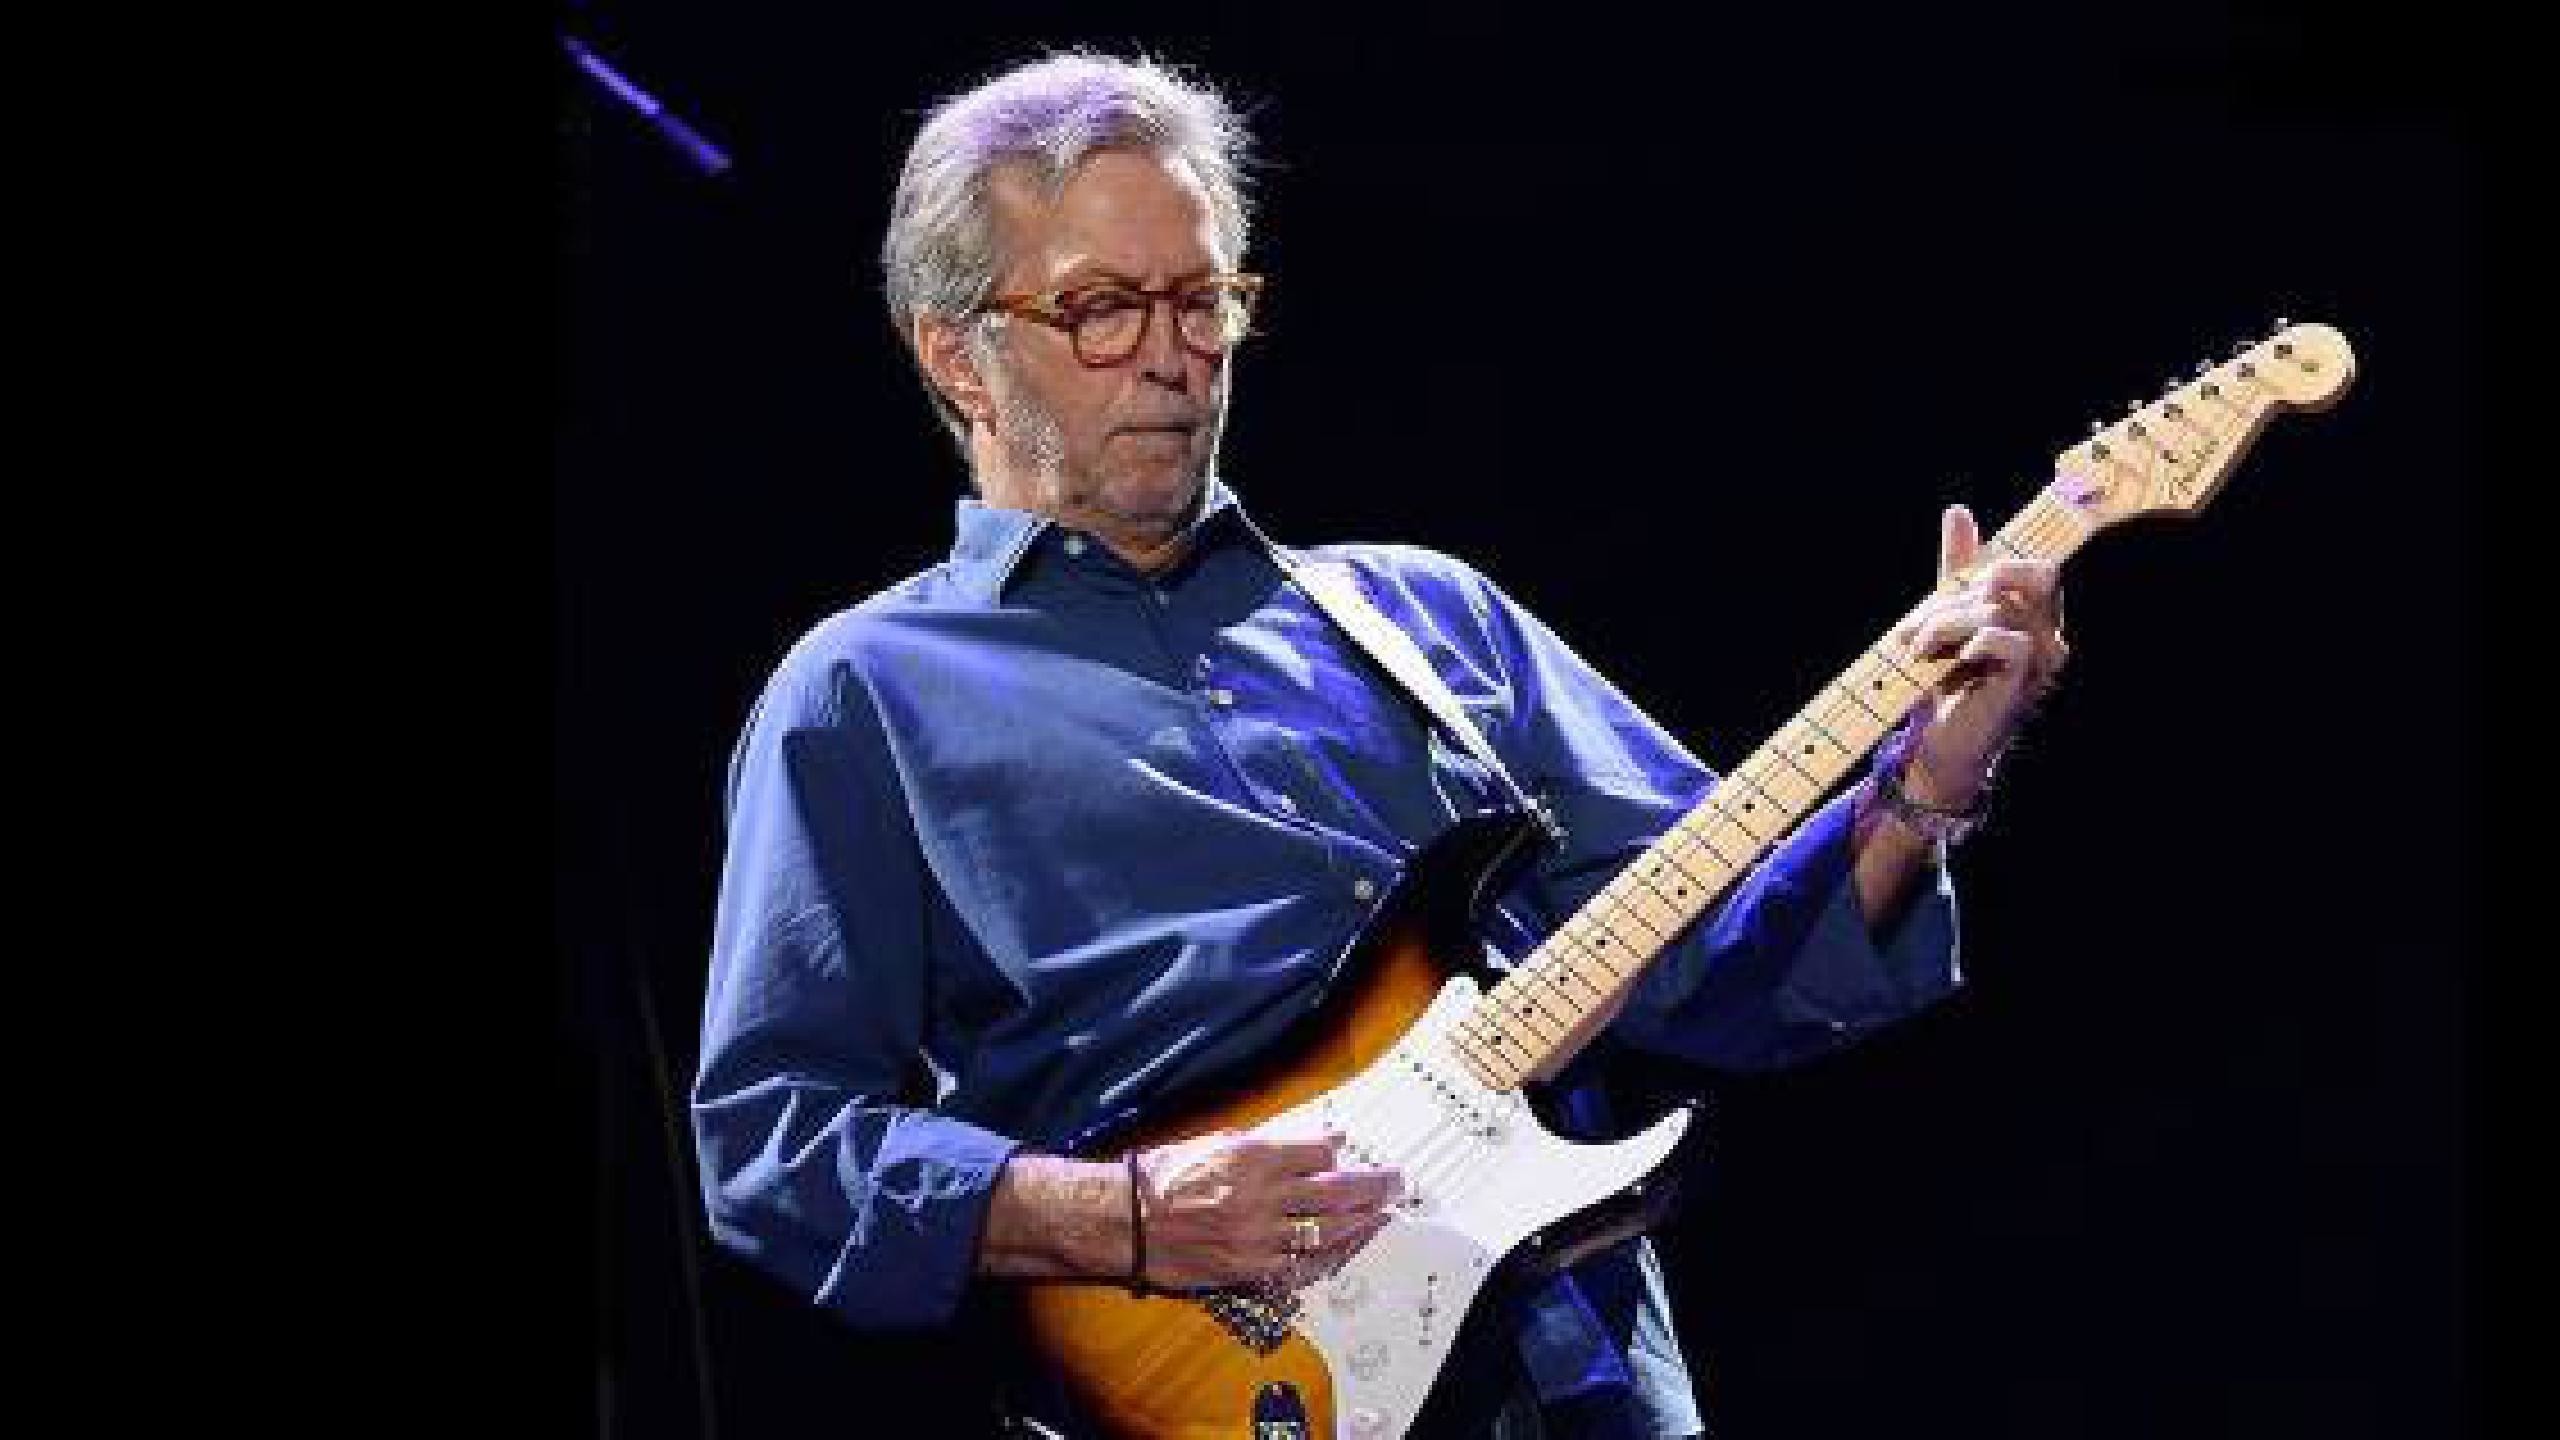 2560x1440 Eric Clapton Tickets fÃ¼r 2017 2018 Tour. Information Ã¼ber Konzerte, Tour  und Karten von Eric Clapton in 2017 2018 | Wegow